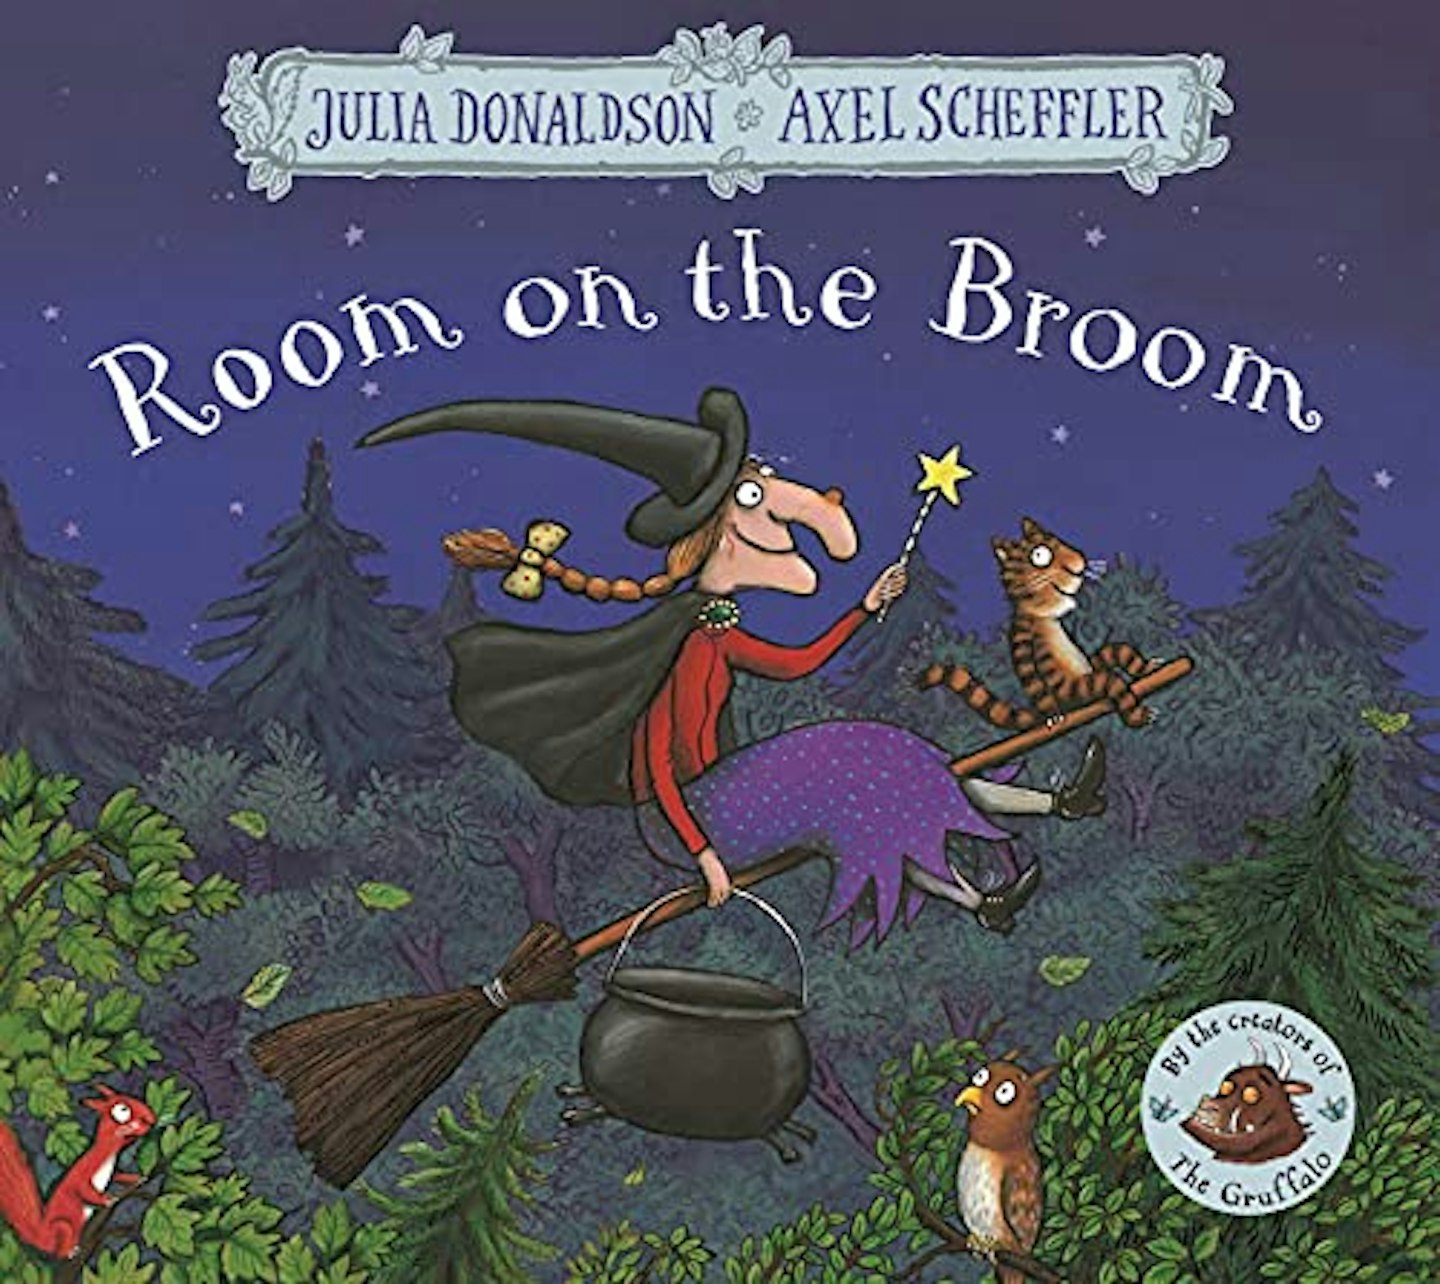  Room on the Broom